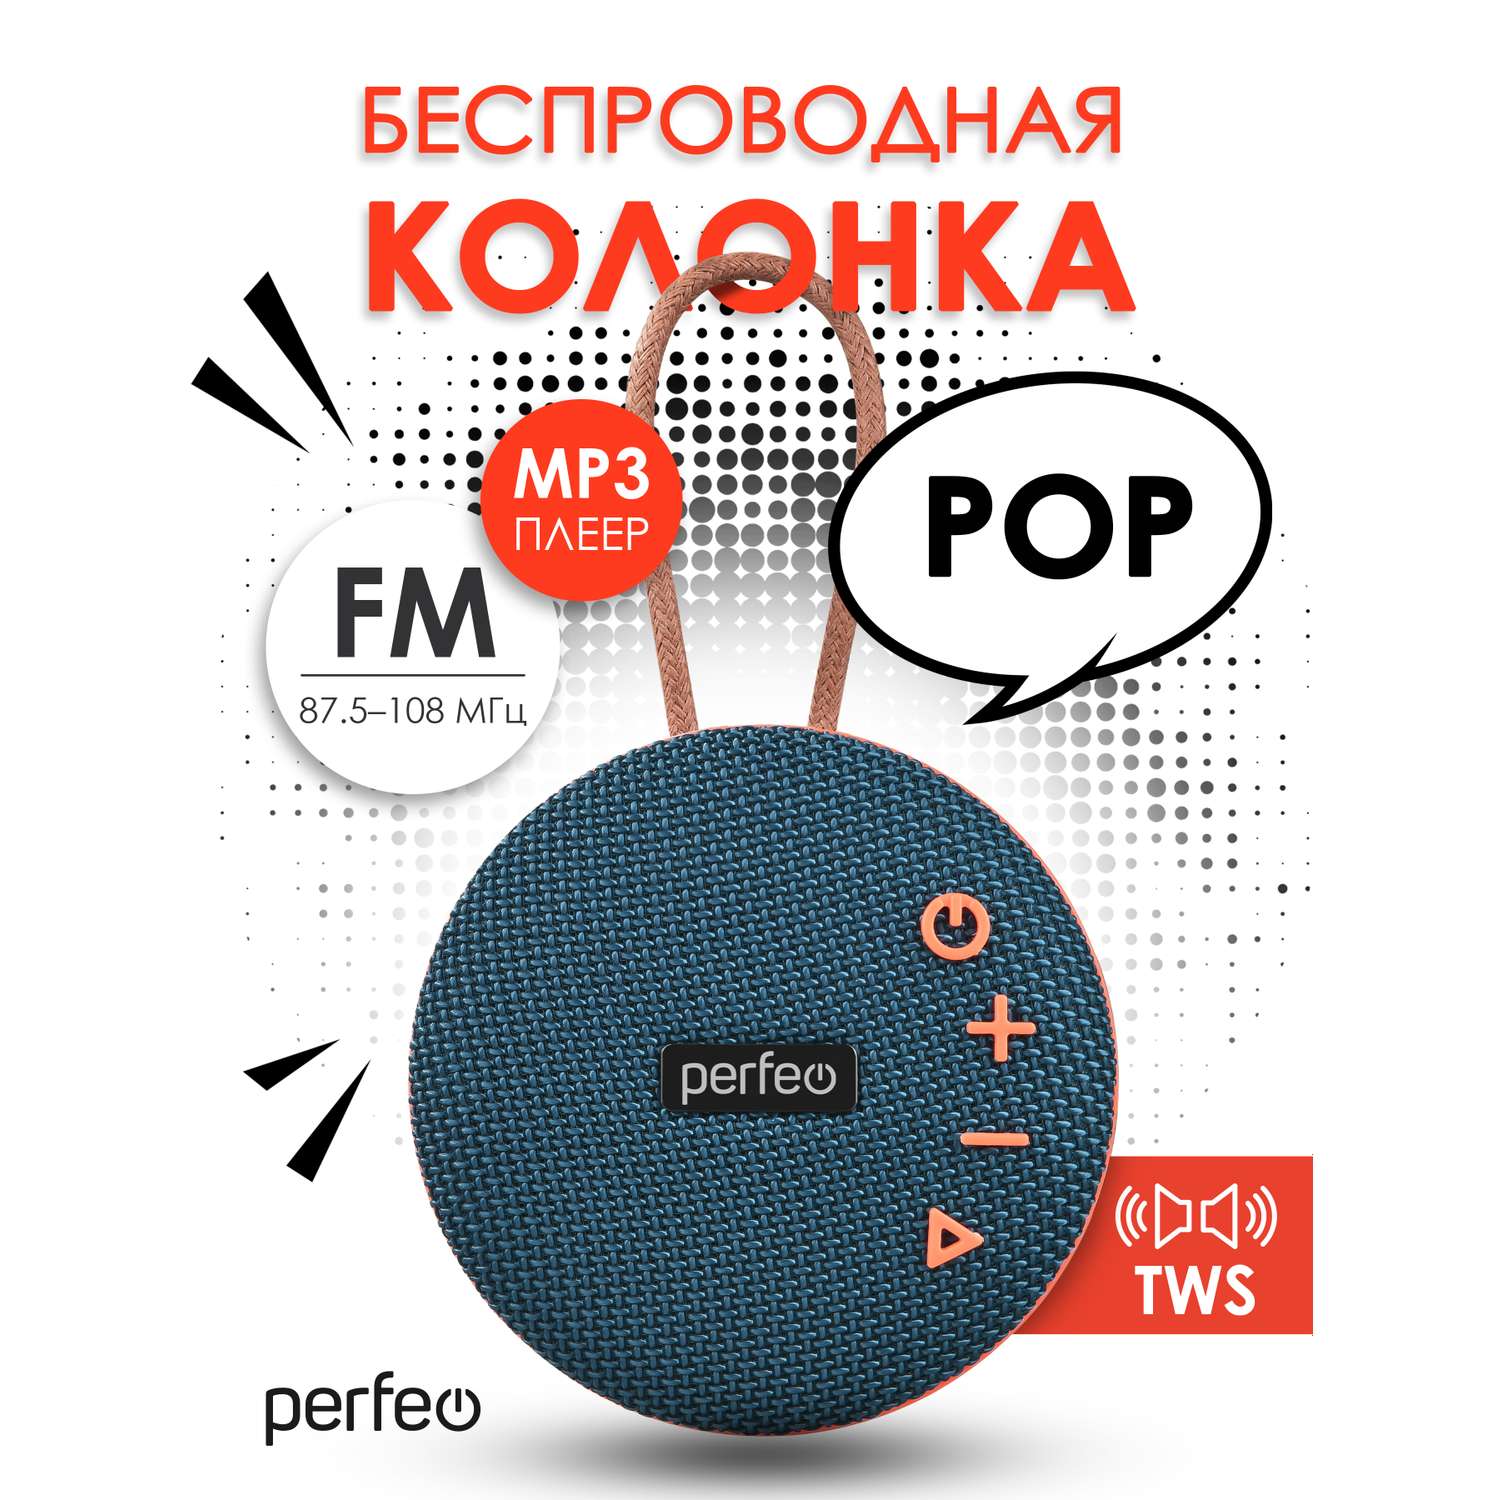 Беспроводная колонка Perfeo POP FM MP3 microSD USB AUX in TWS мощность 6Вт 1200mAh синяя - фото 2